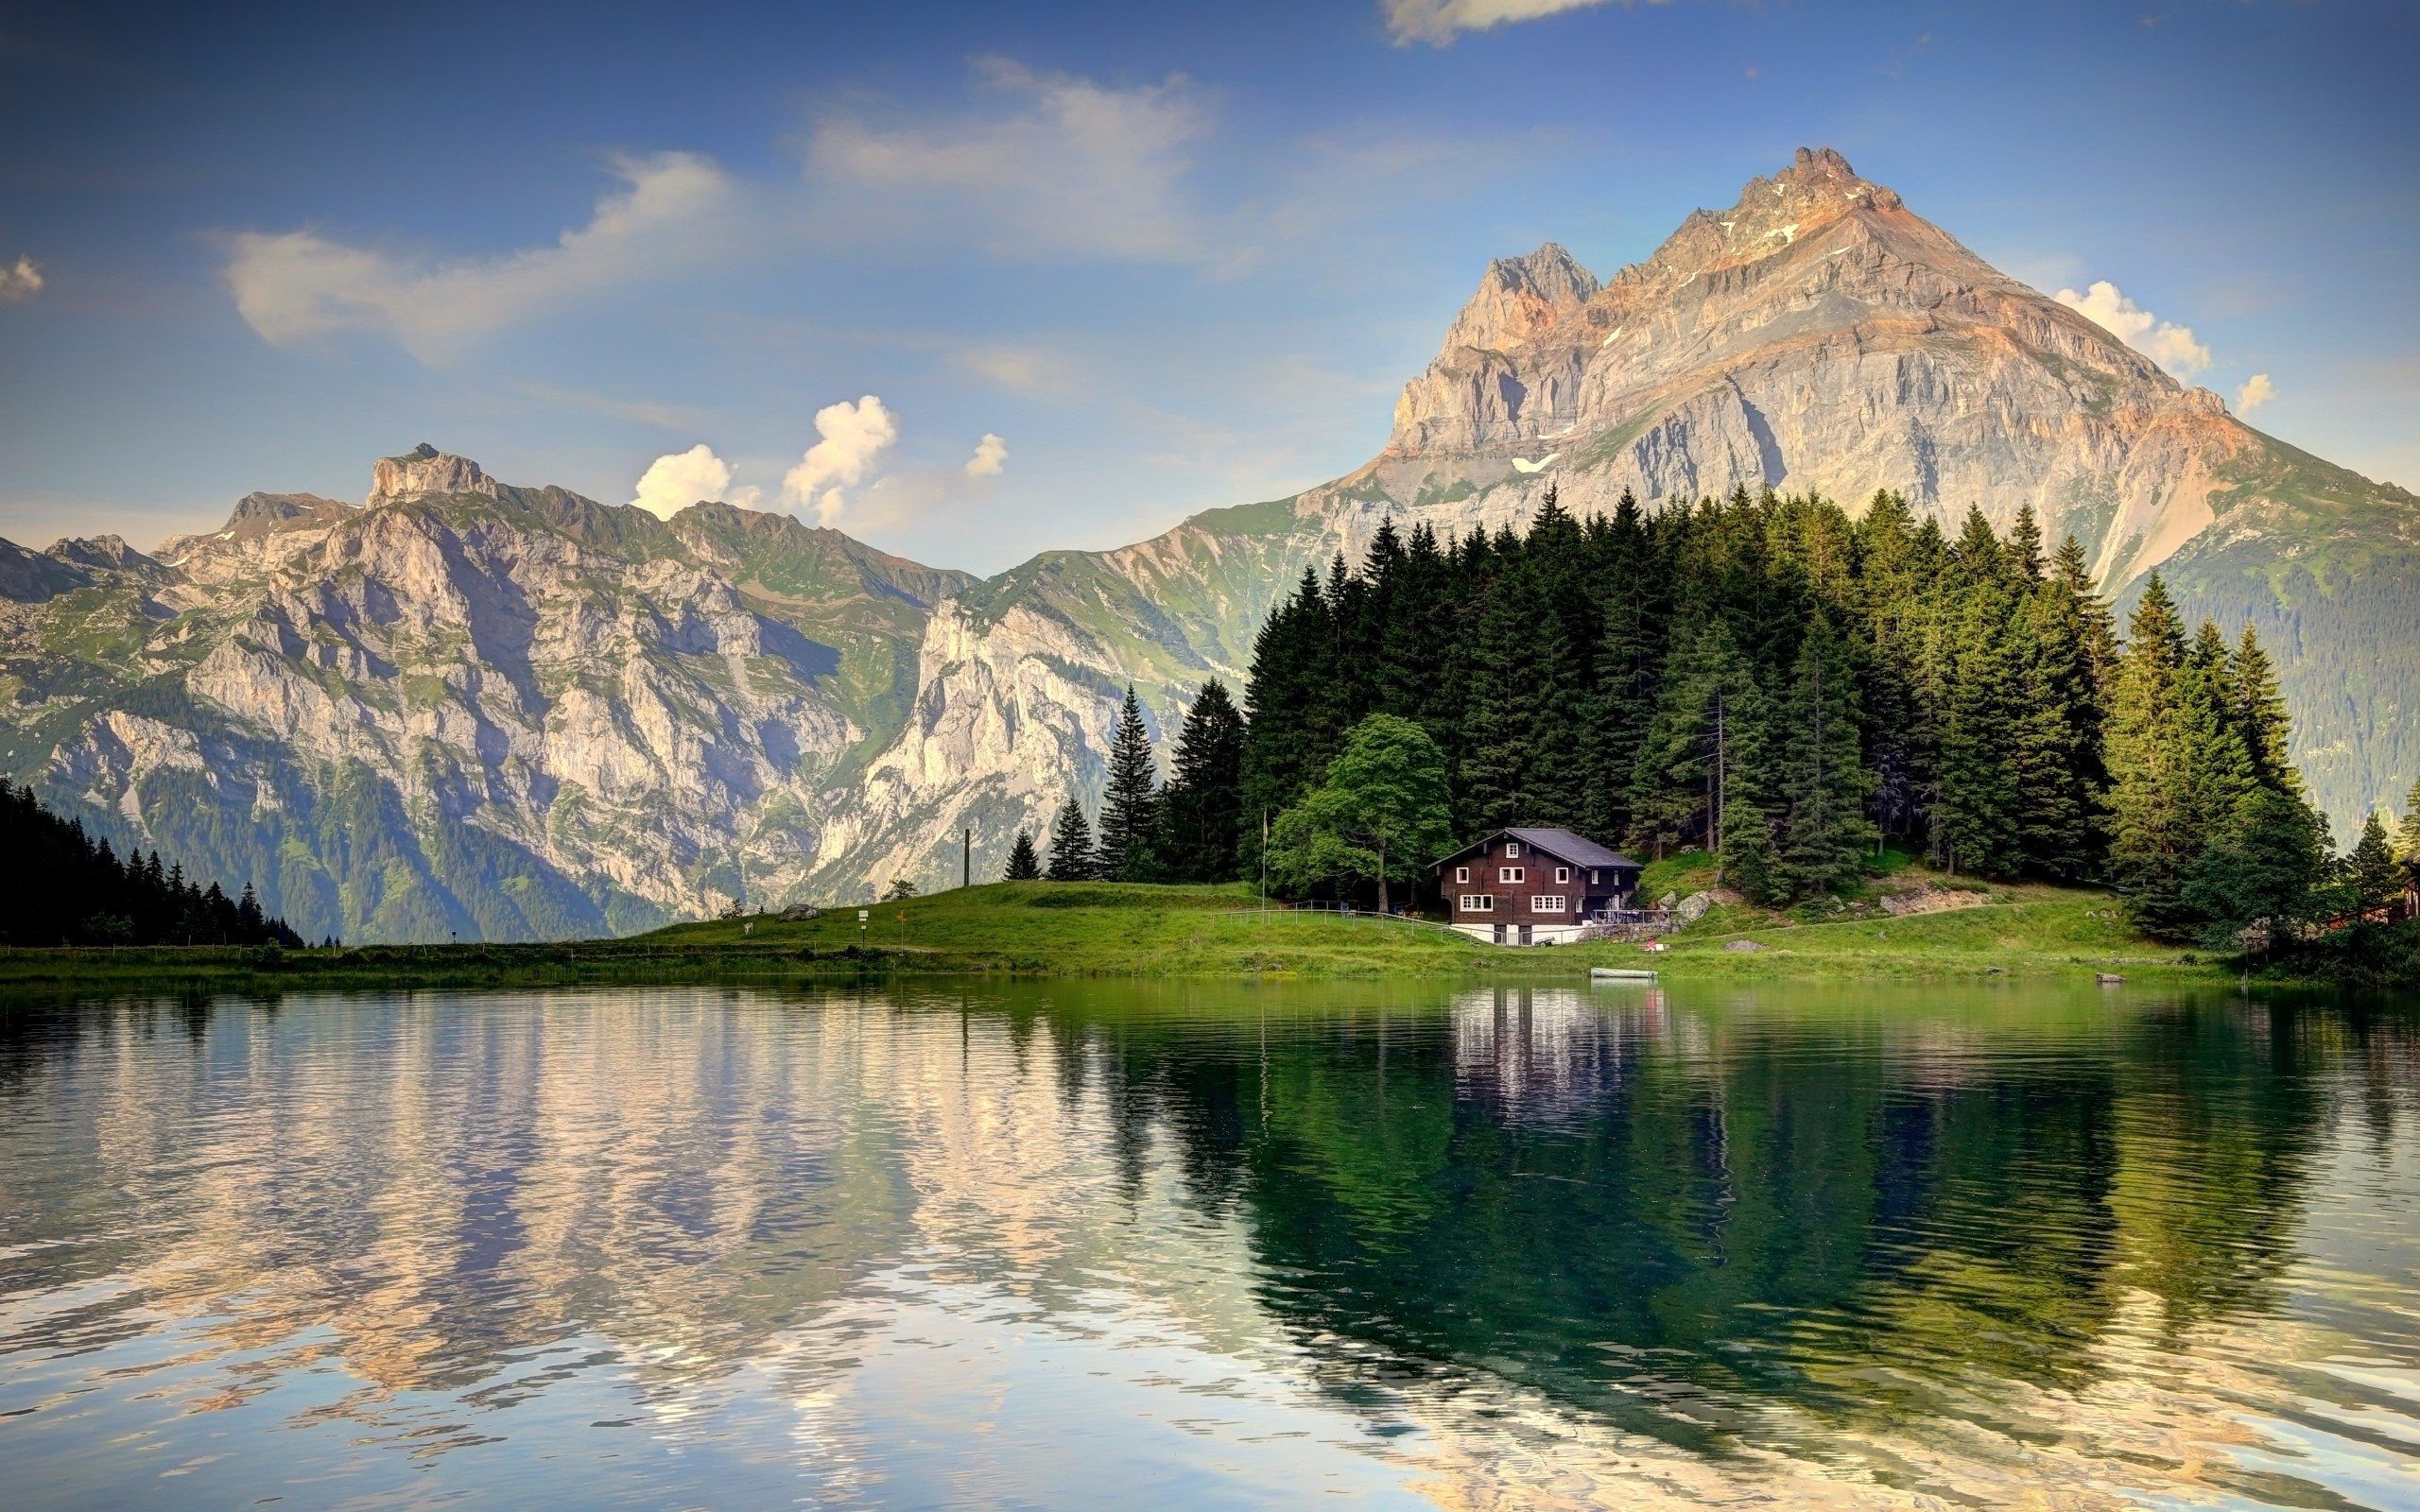 والپیپر بیش از حد زیبای طبیعت سوئیس